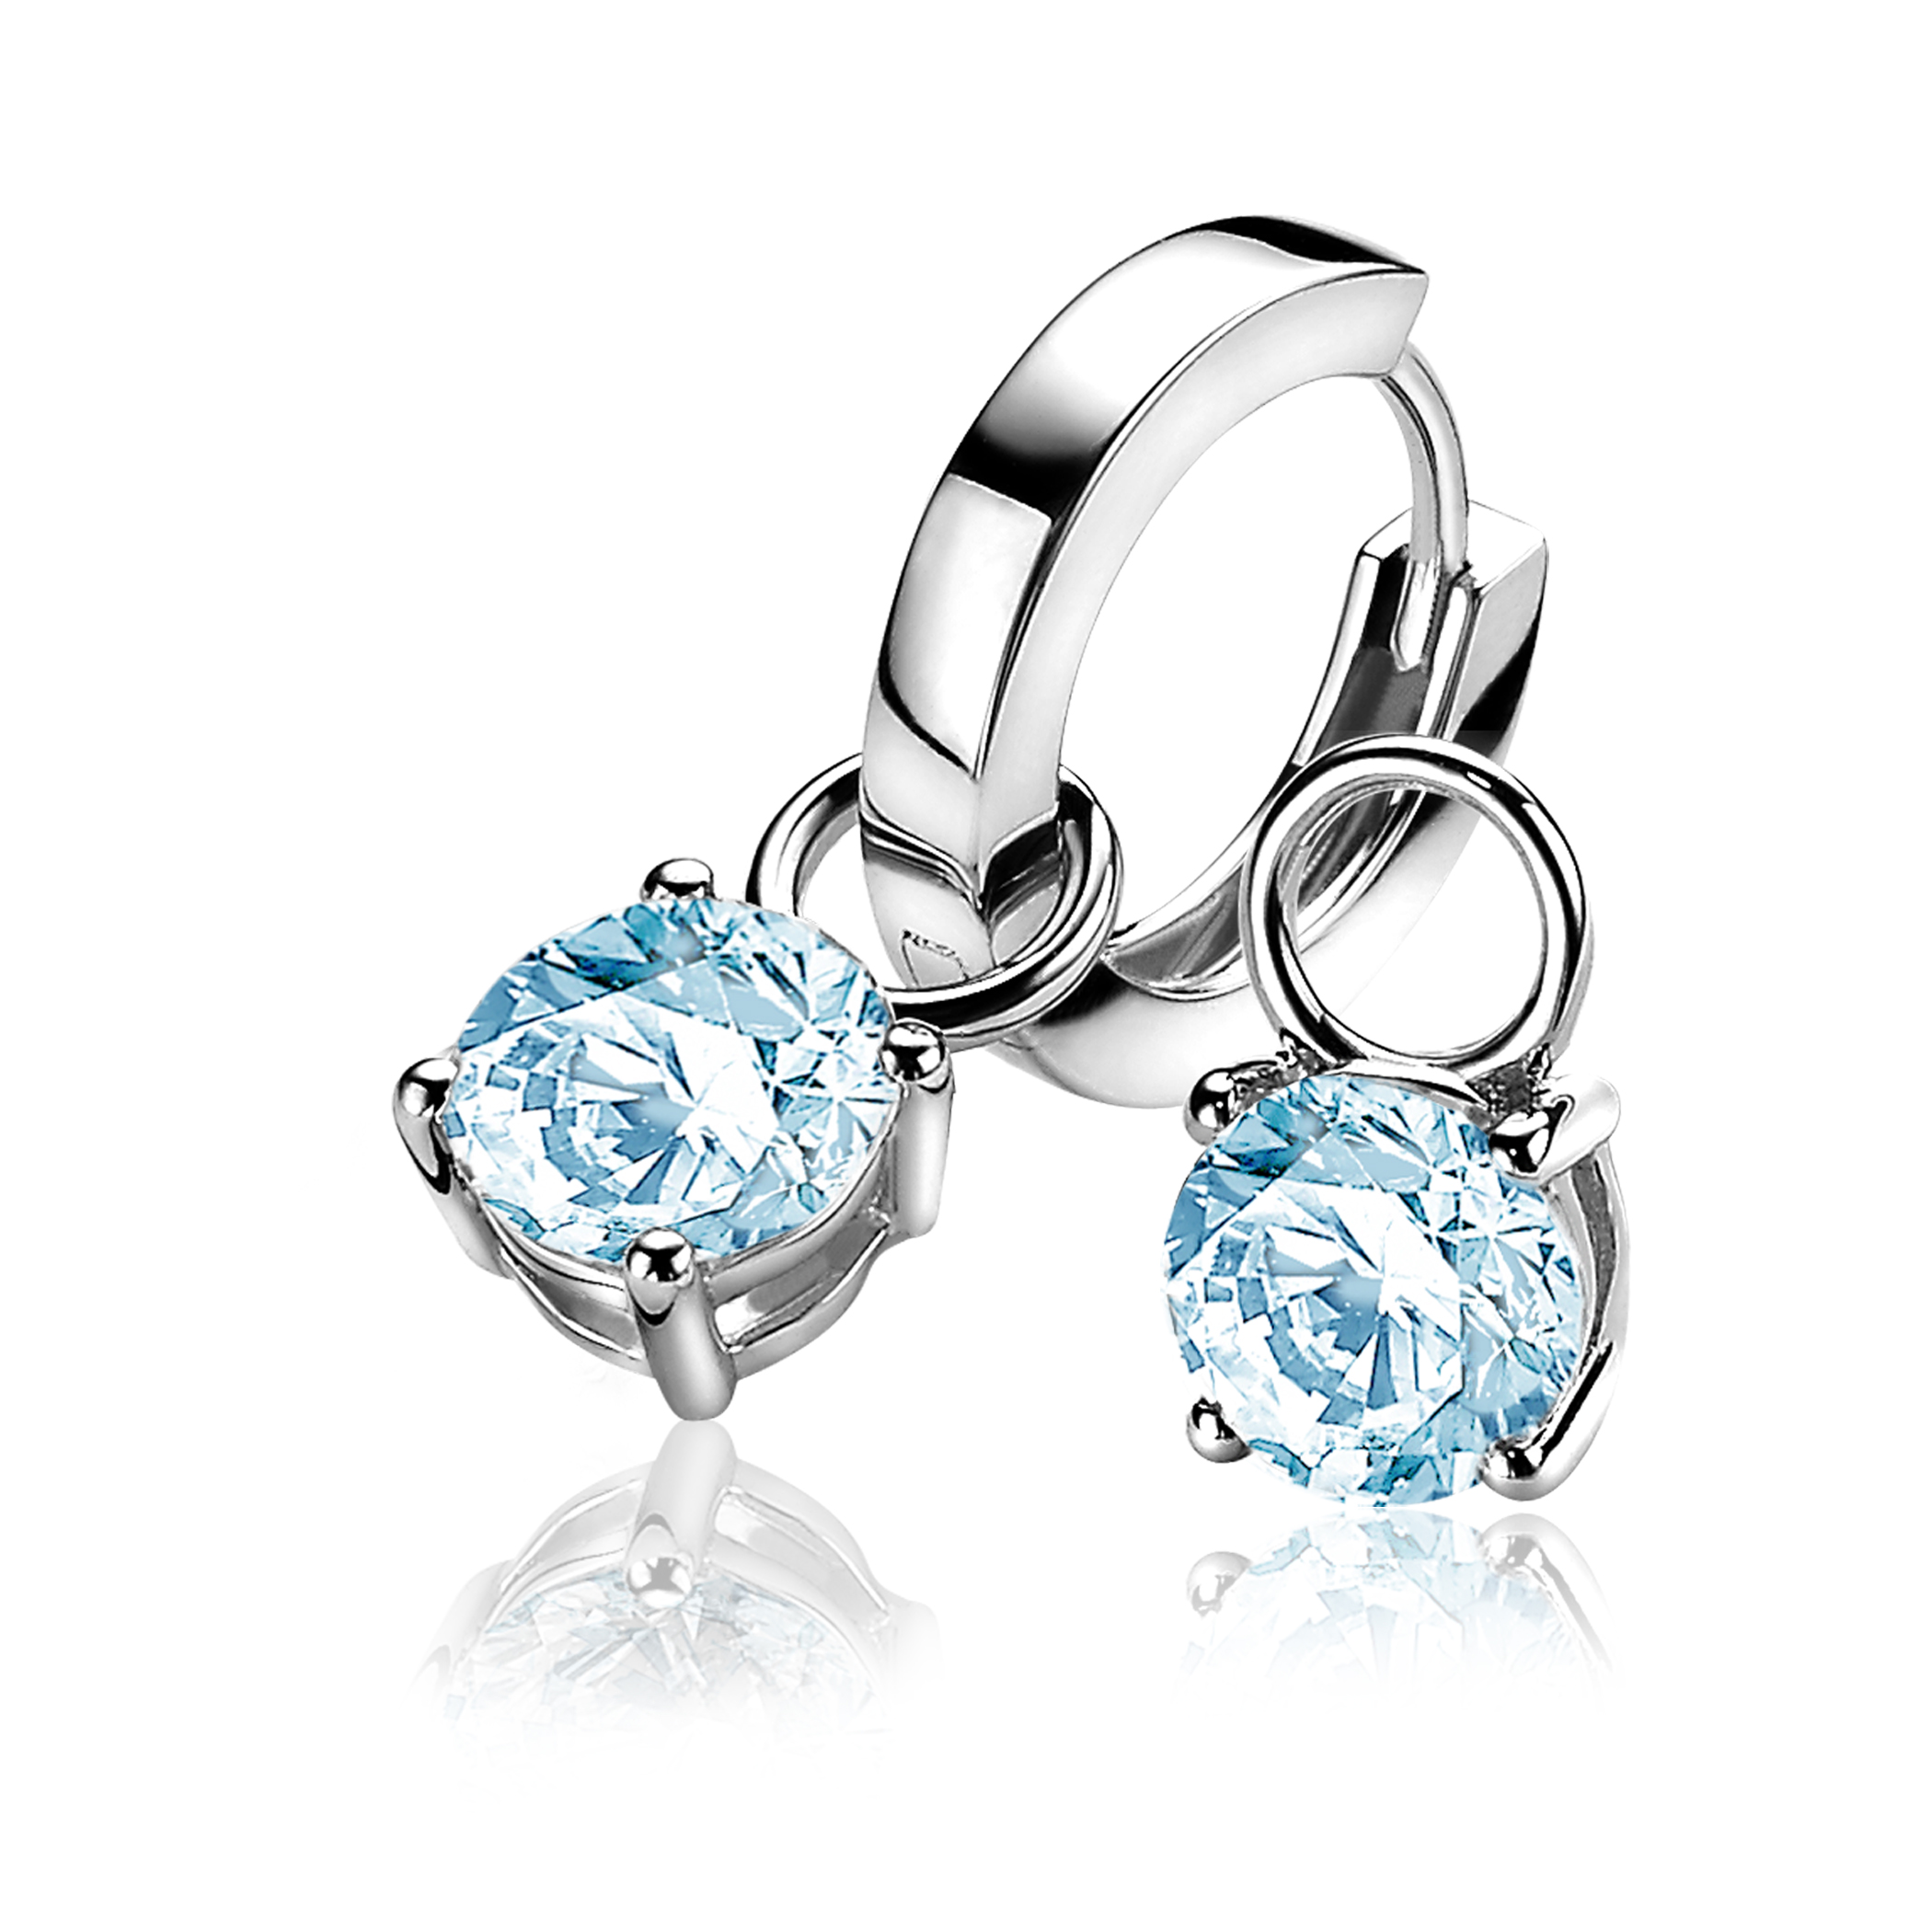 ZINZI Sterling Silver Earrings Pendants Round Blue ZICH1300B (excl. hoop earrings)